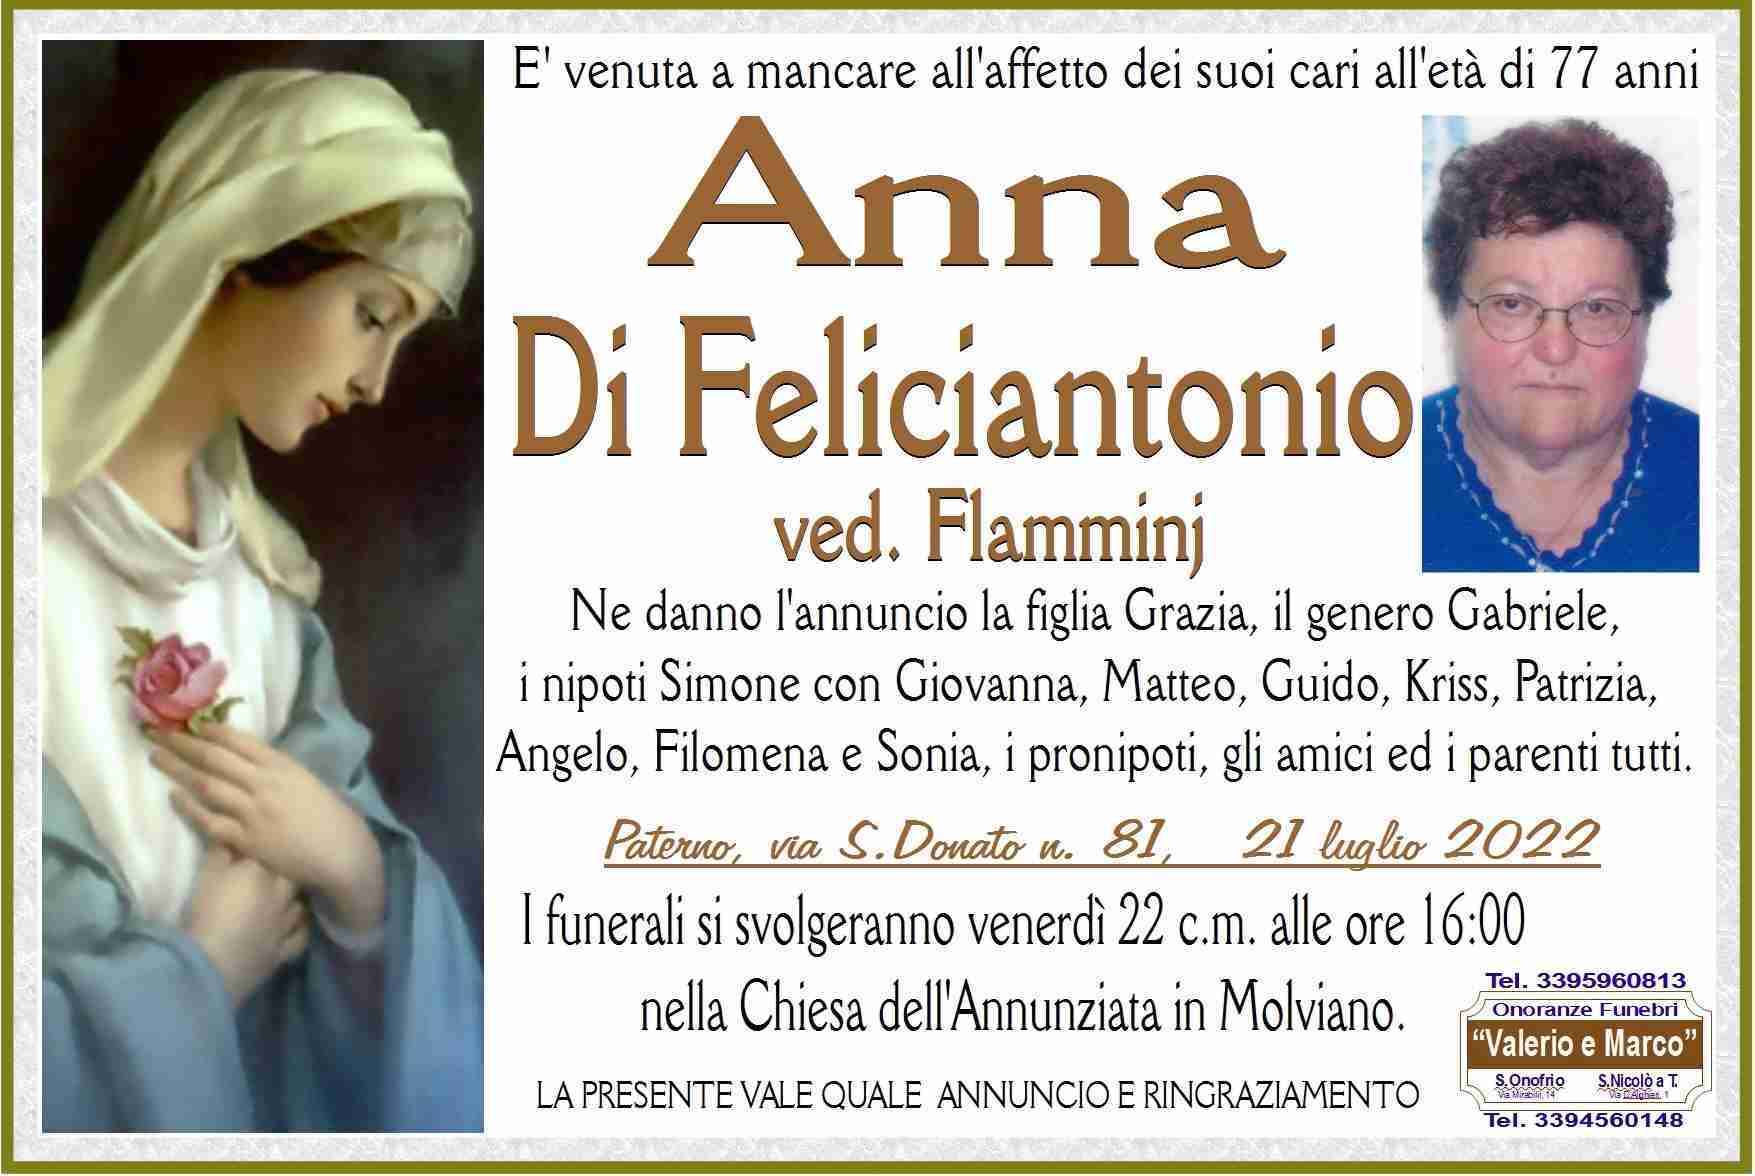 Anna Di Feliciantonio